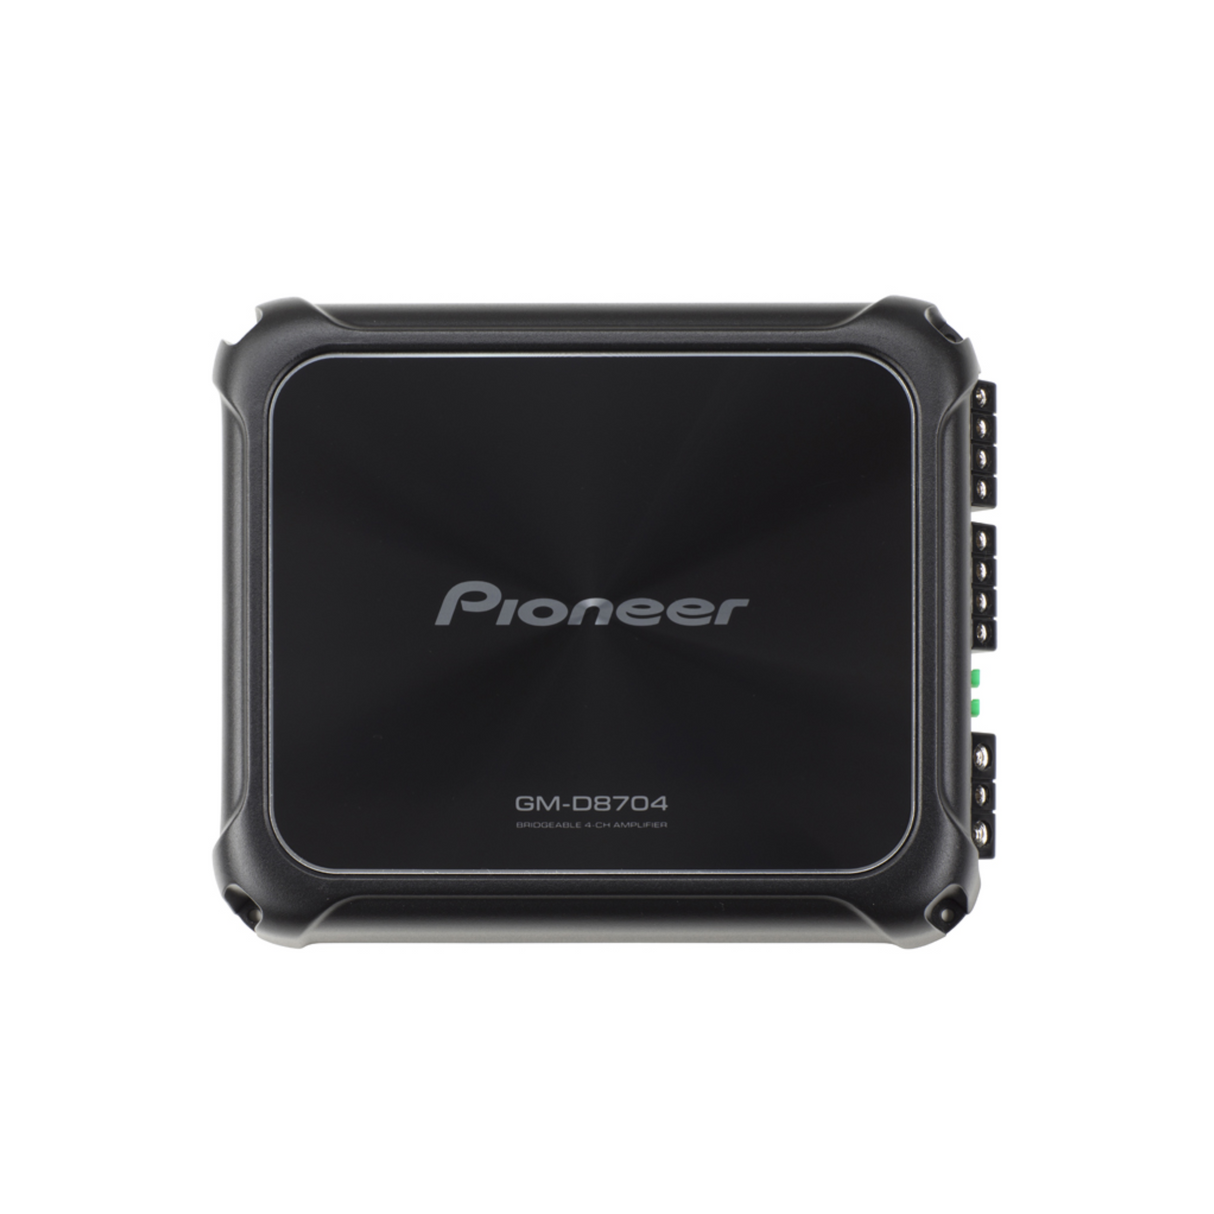 Pioneer GMD-8704 Class-D 1200w 4-Channel Bridgeable Car Amplifier